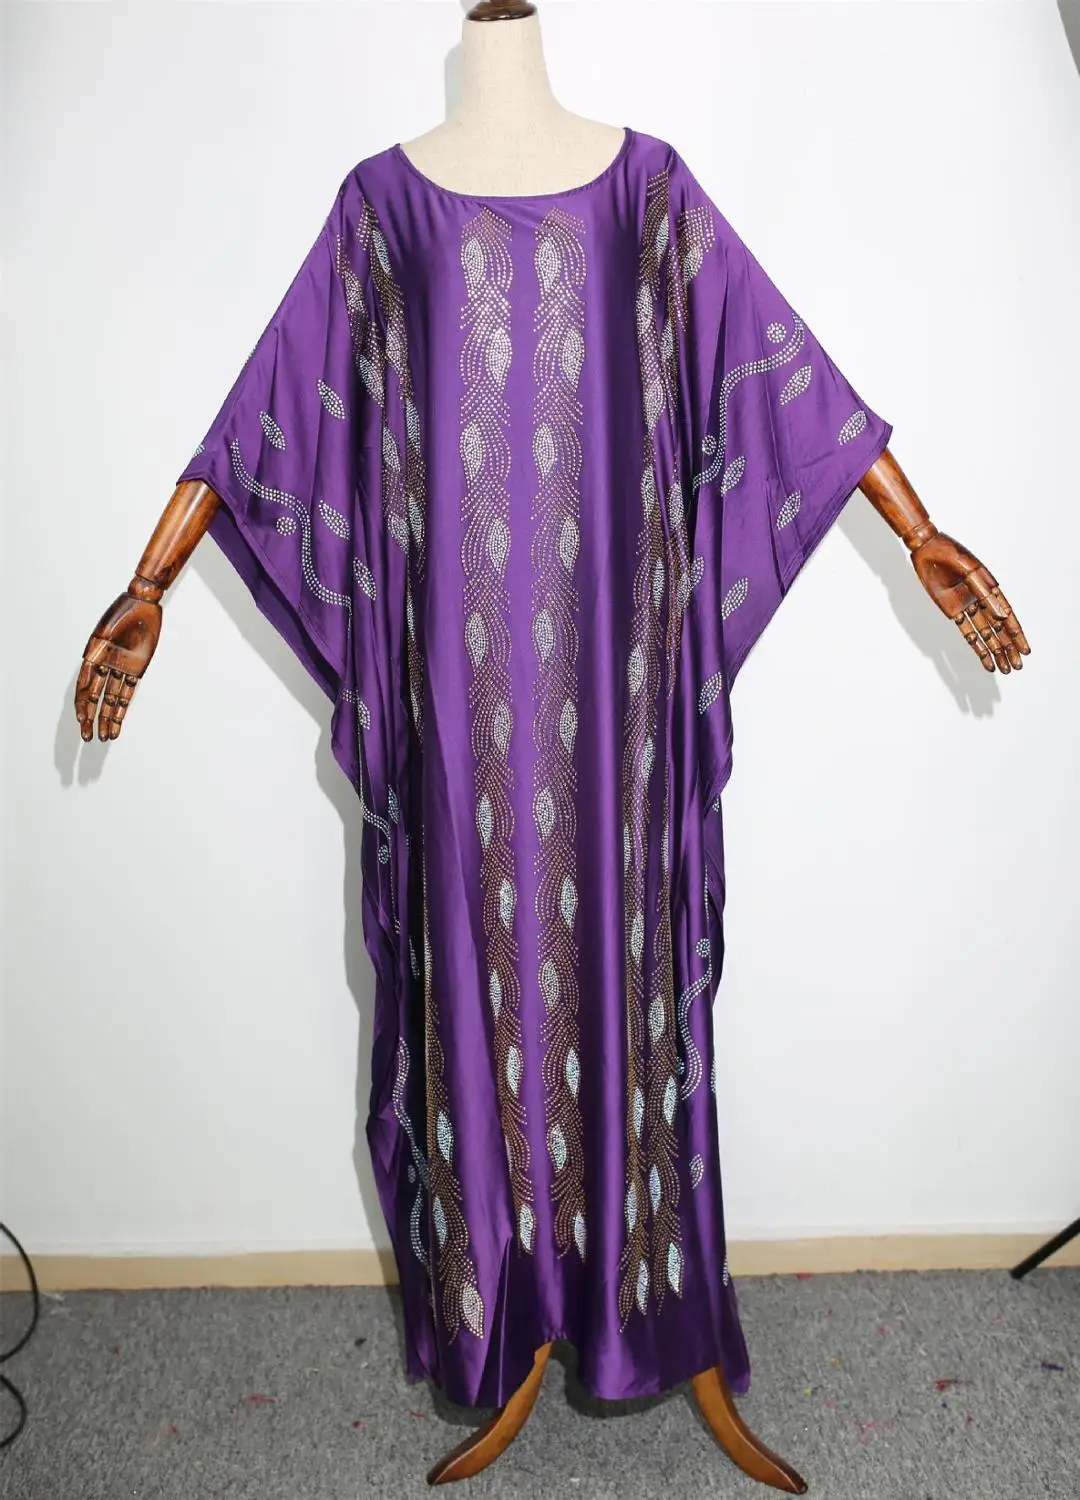 Африканский дизайн Дашики Бисероплетение шелковое платье Базен хиджаб элегантный макси халат платья Broder Riche сексуальный тонкий традиционный хипстер - Цвет: purple